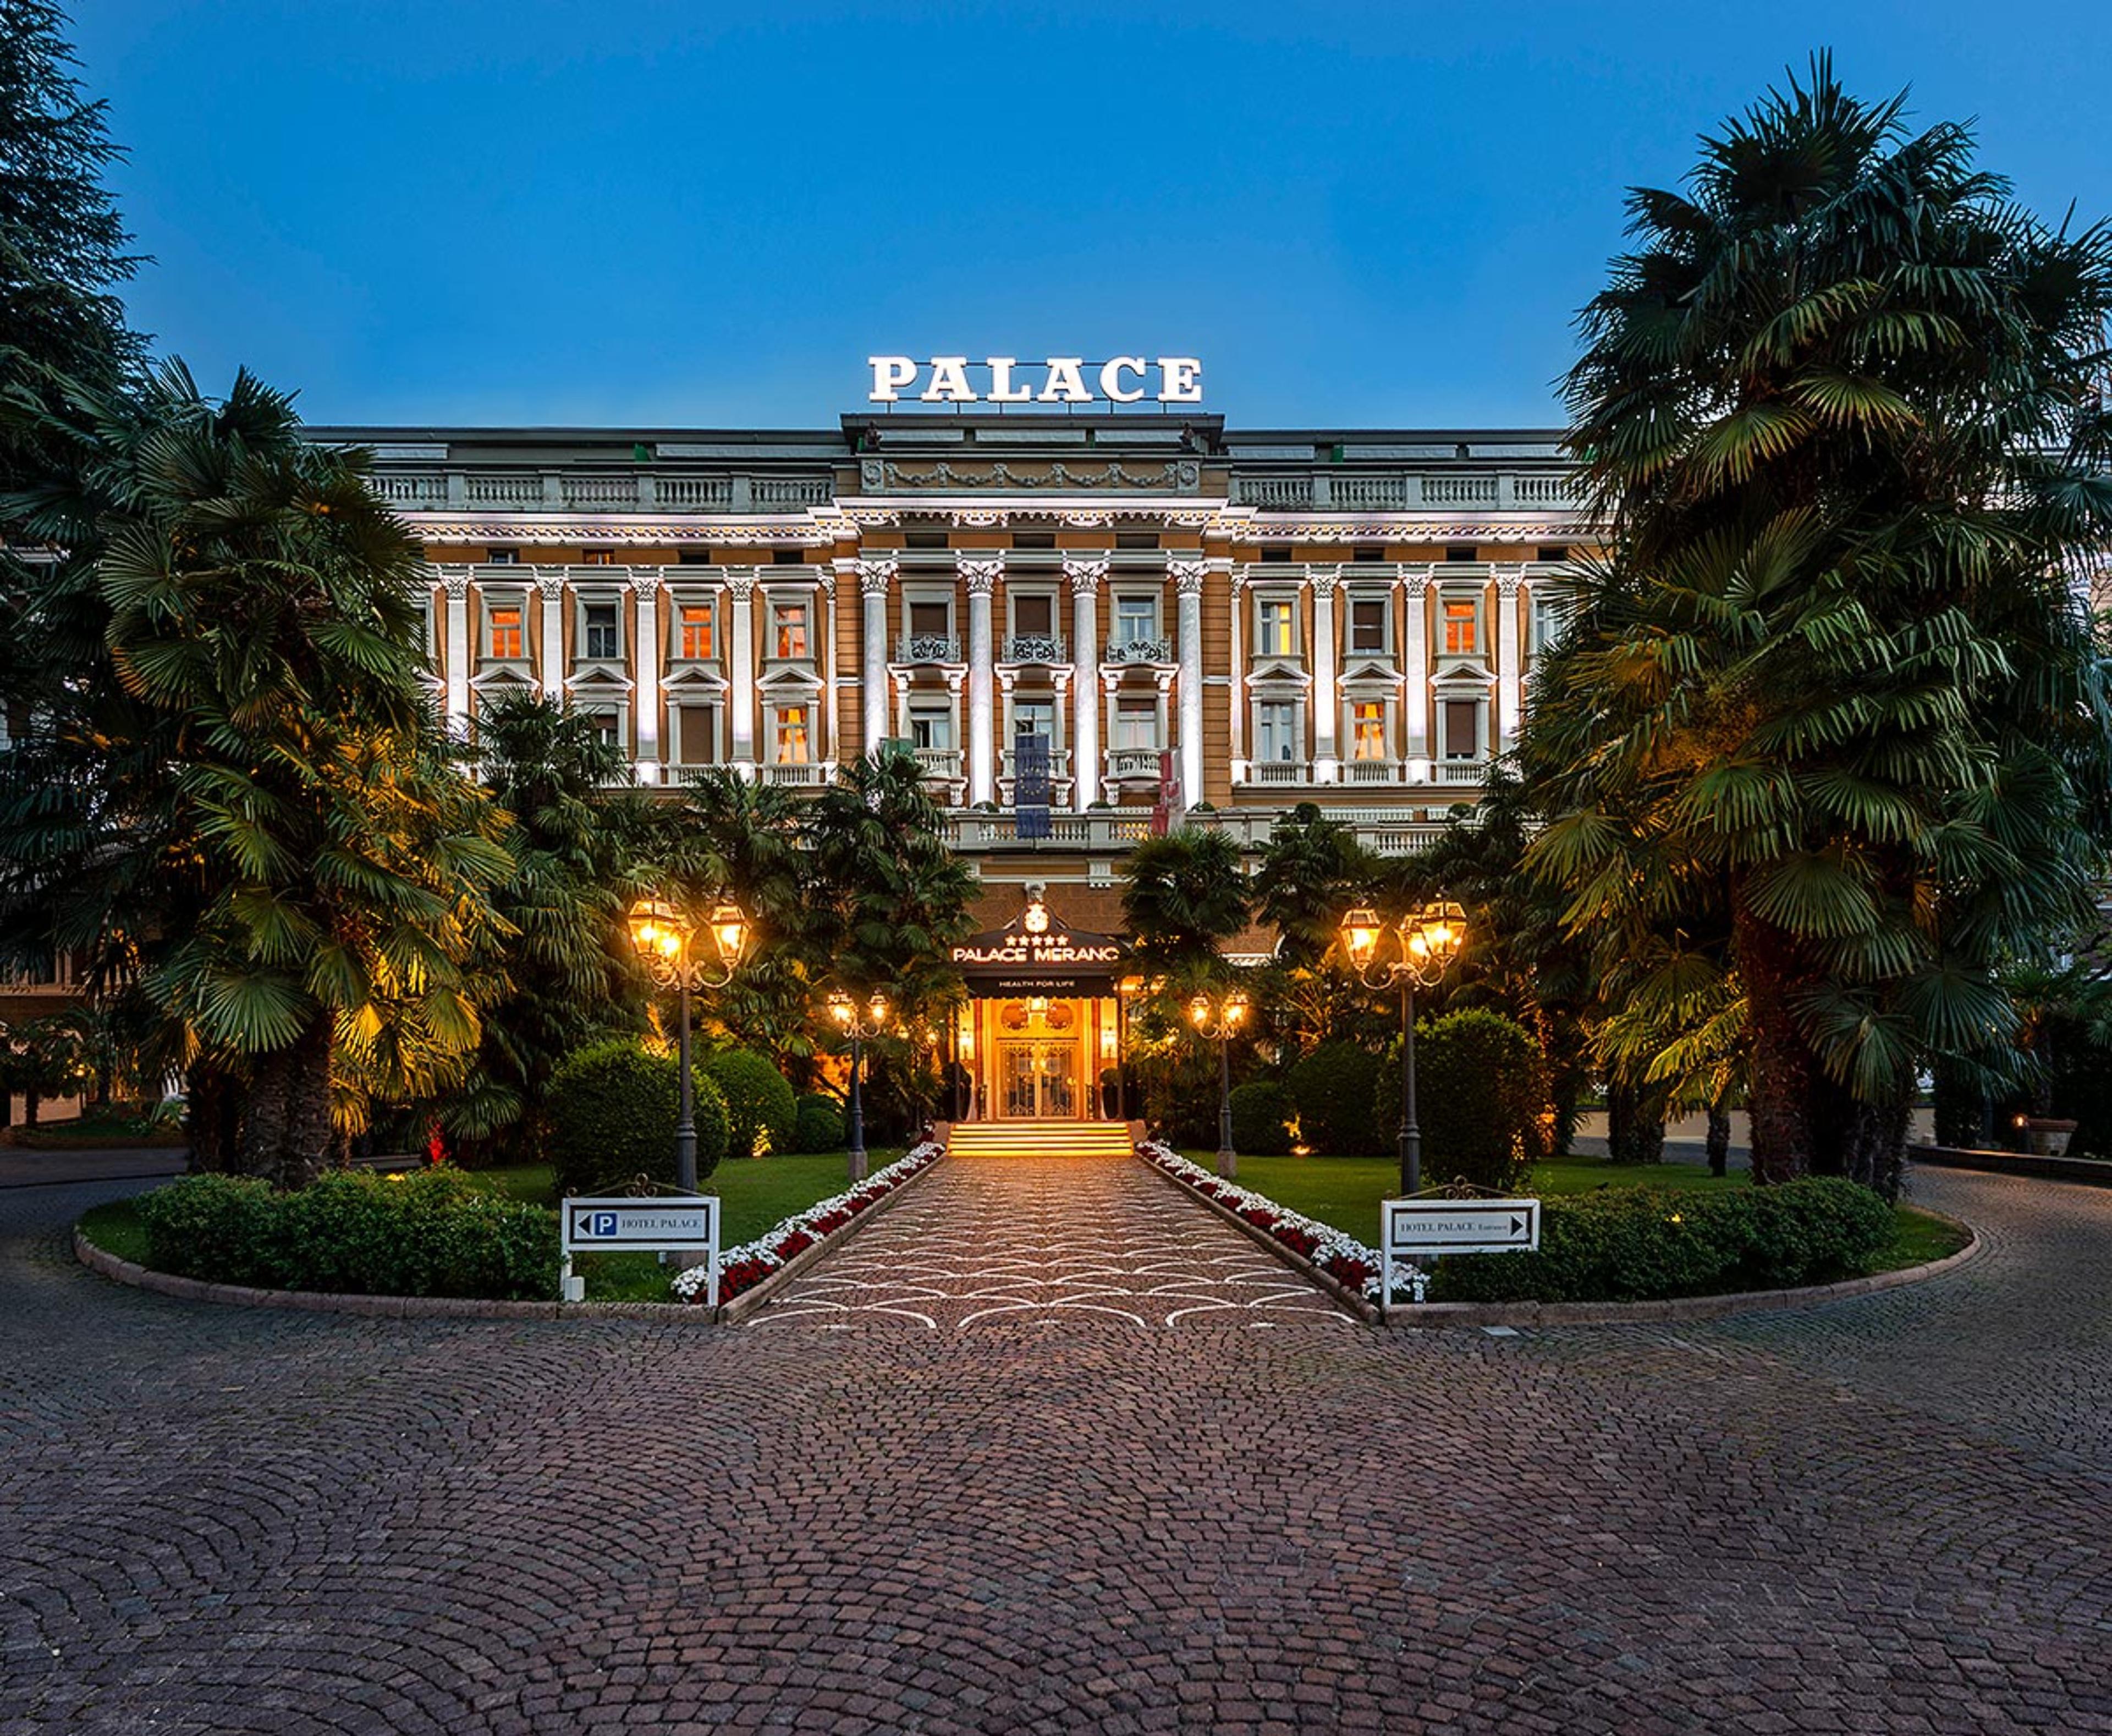 Hotel Palace Merano - Merano, Italy